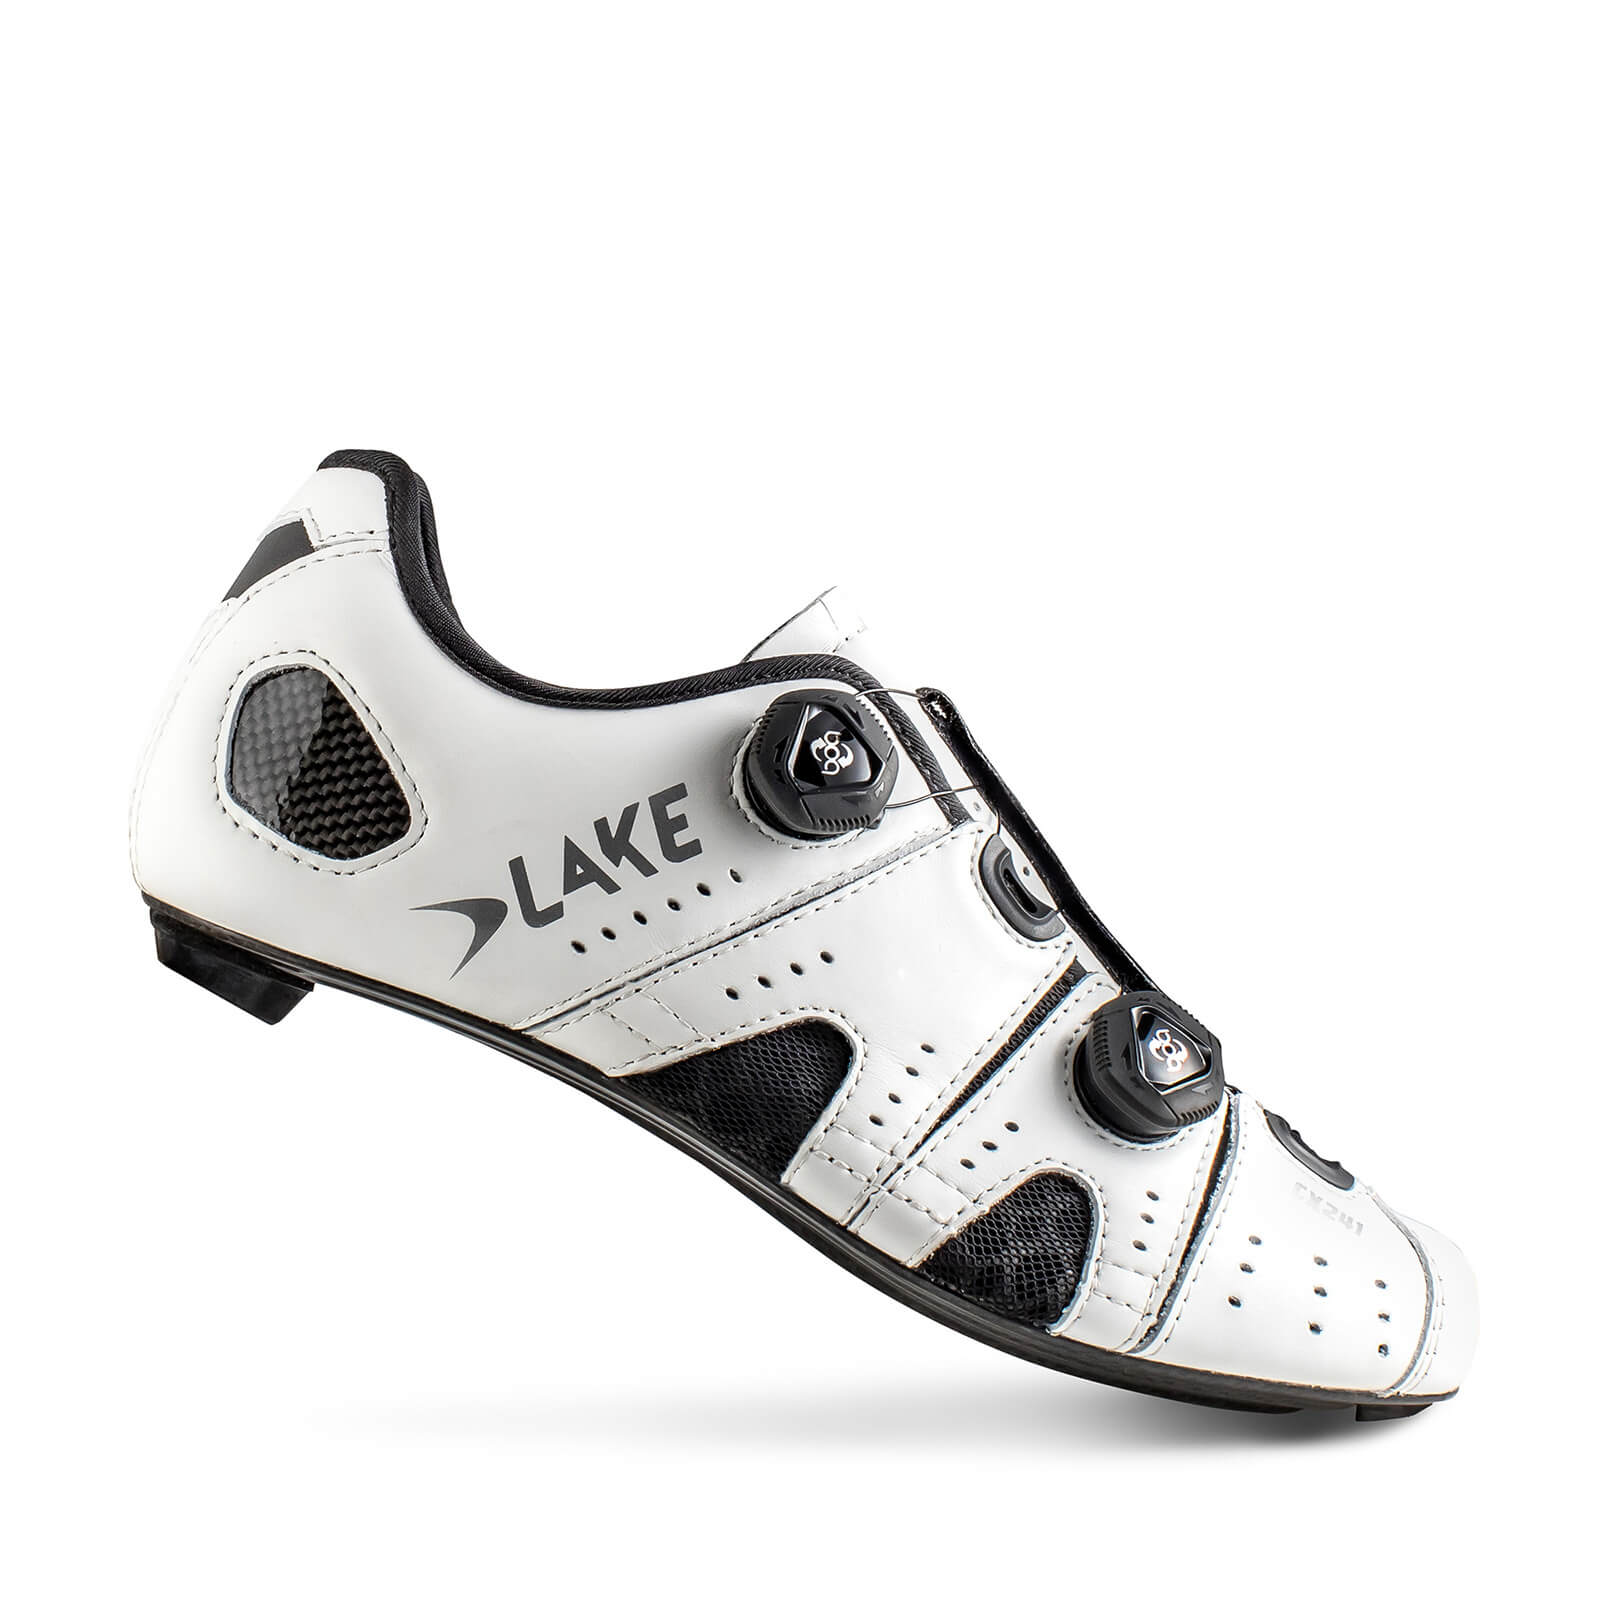 Lake CX241 Road Shoes - EU42 - White